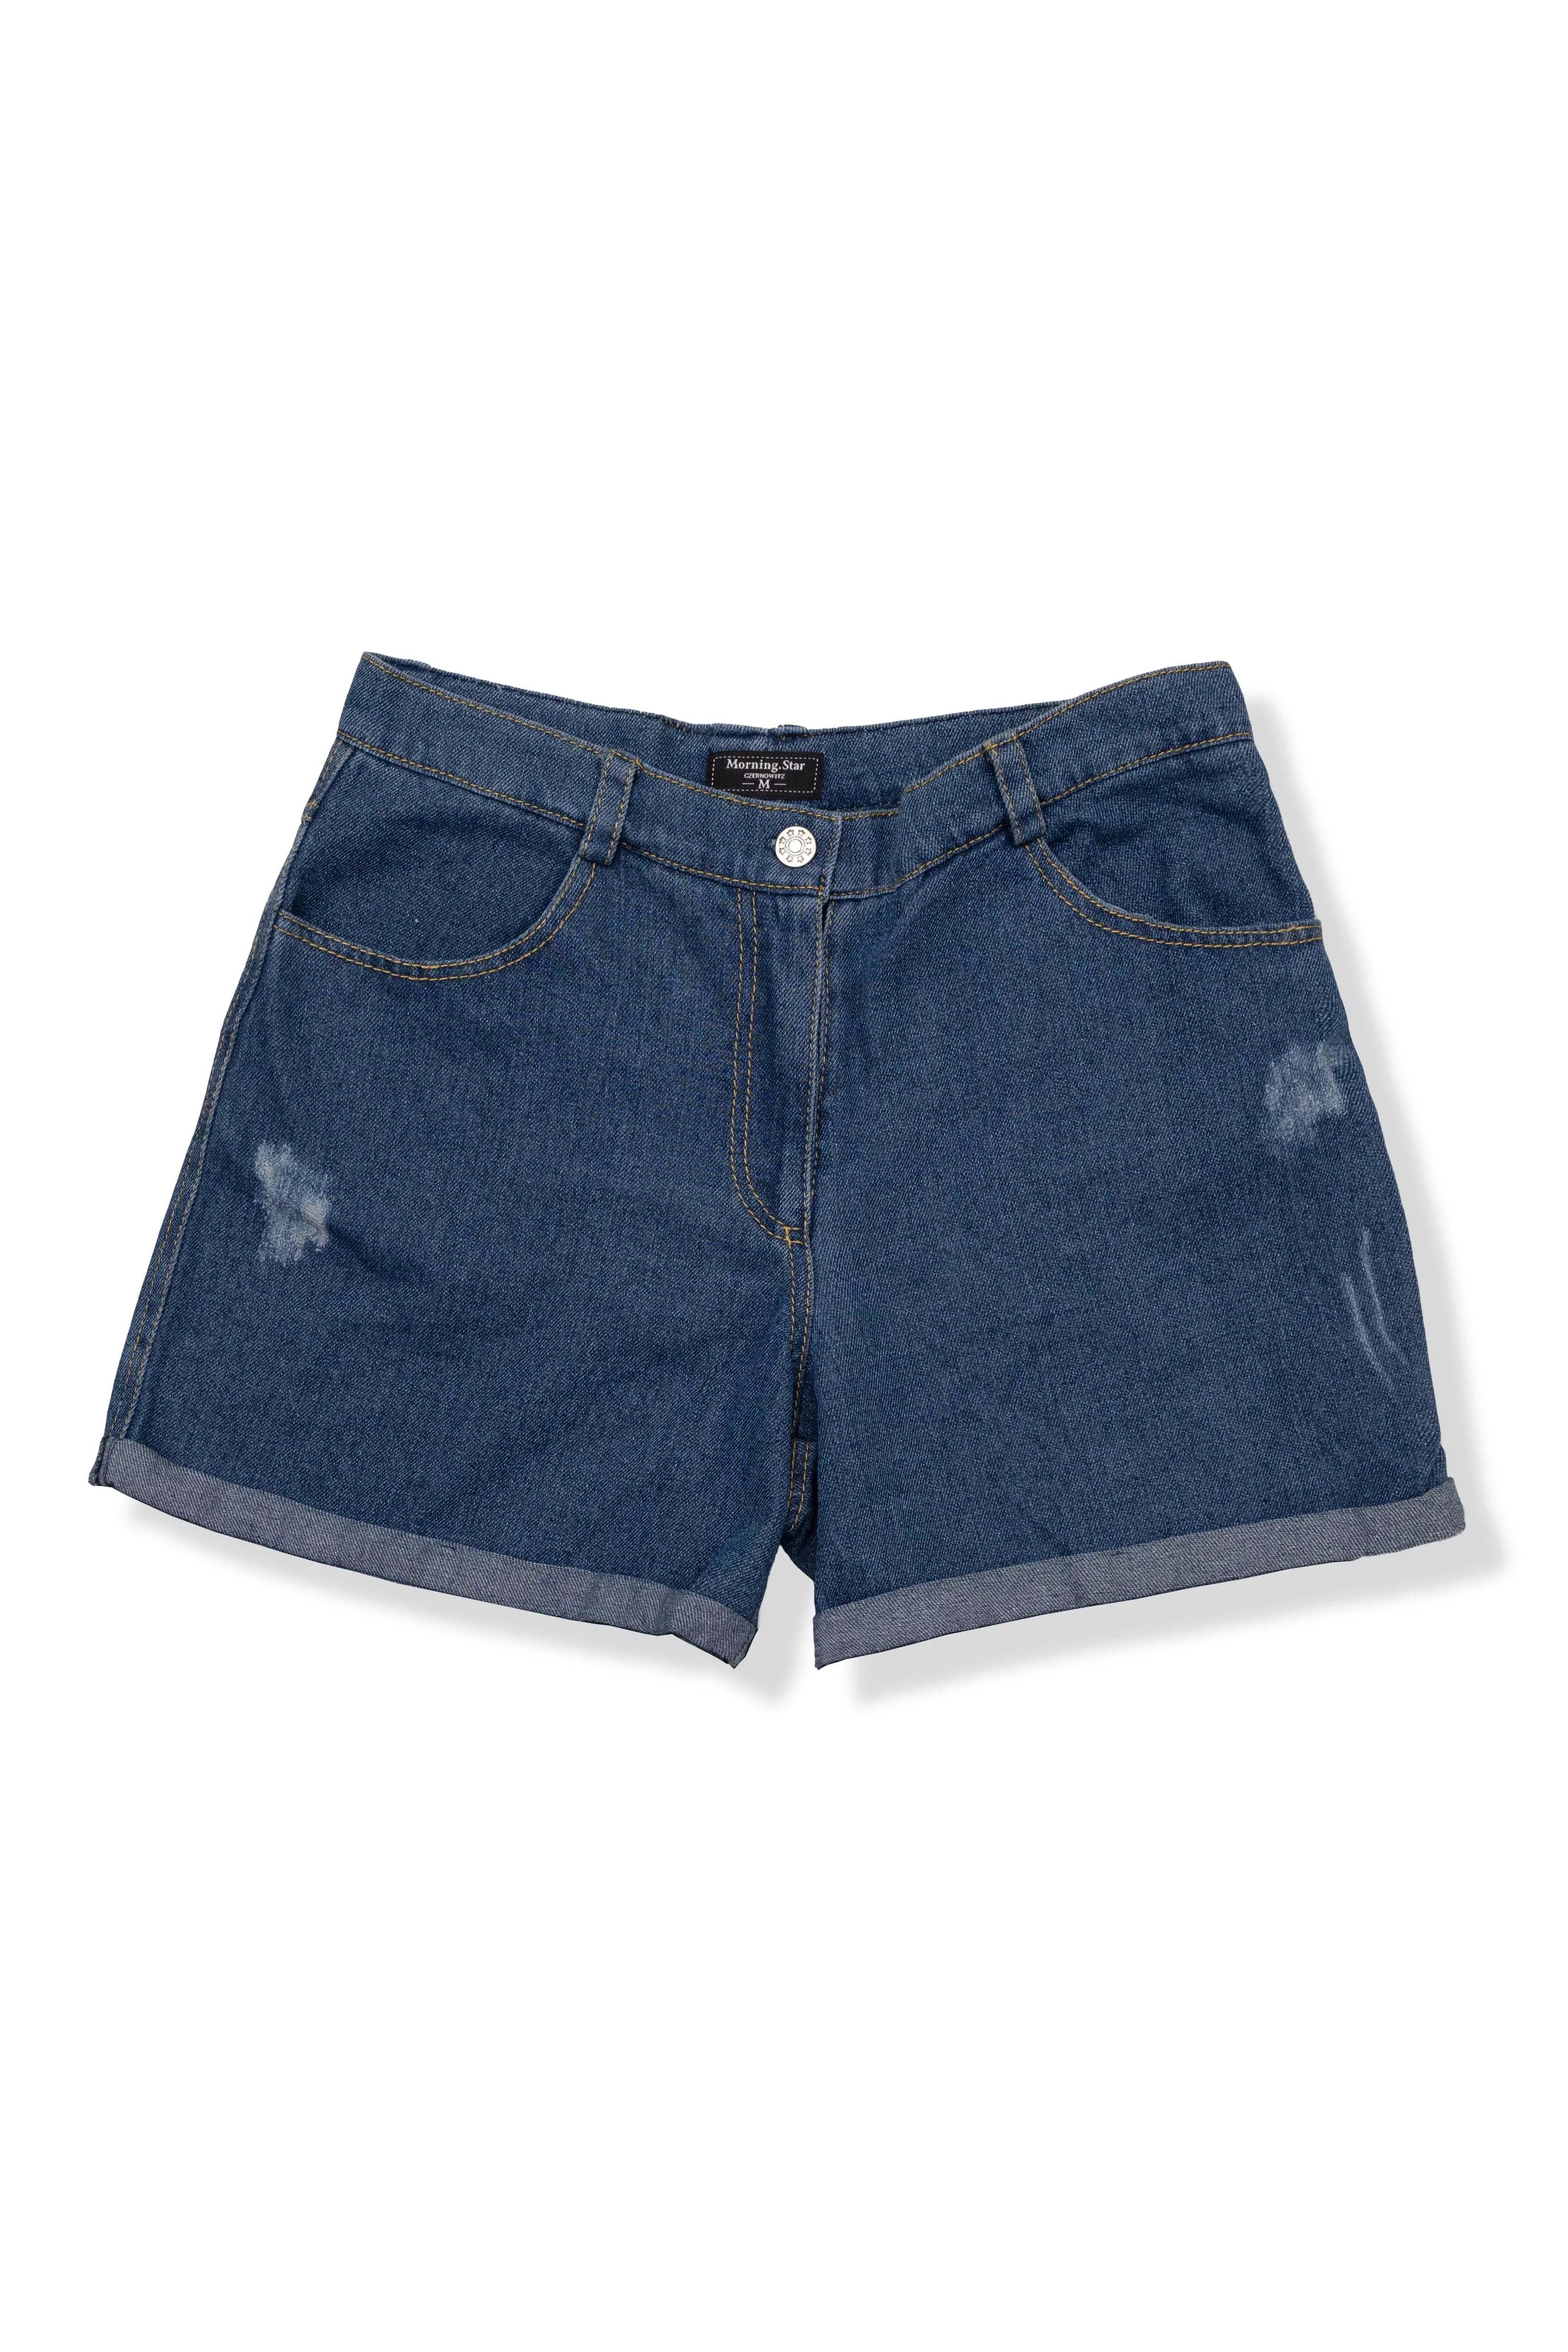 Women's blue denim shorts - Morning Star